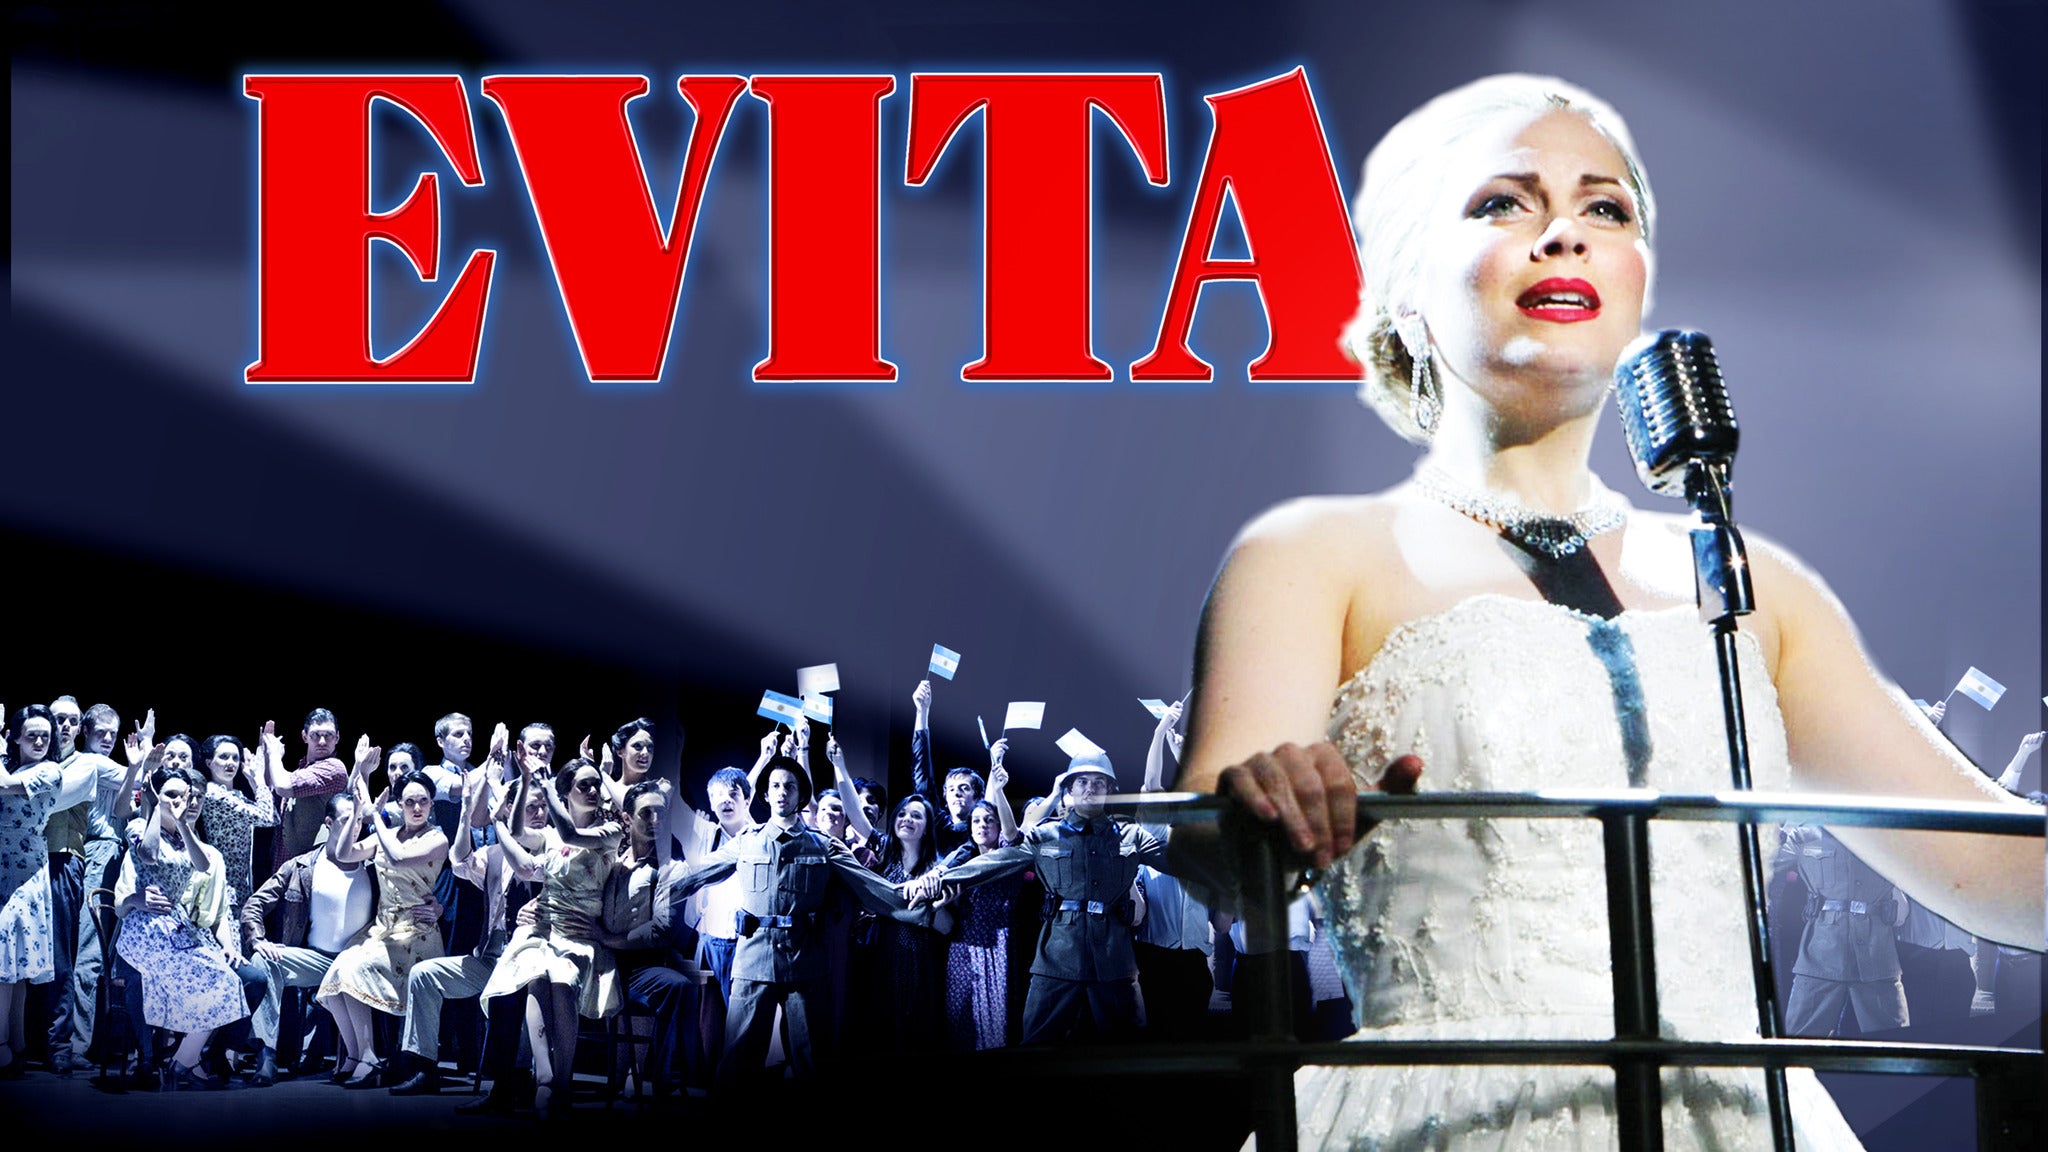 Evita Tickets Event Dates & Schedule